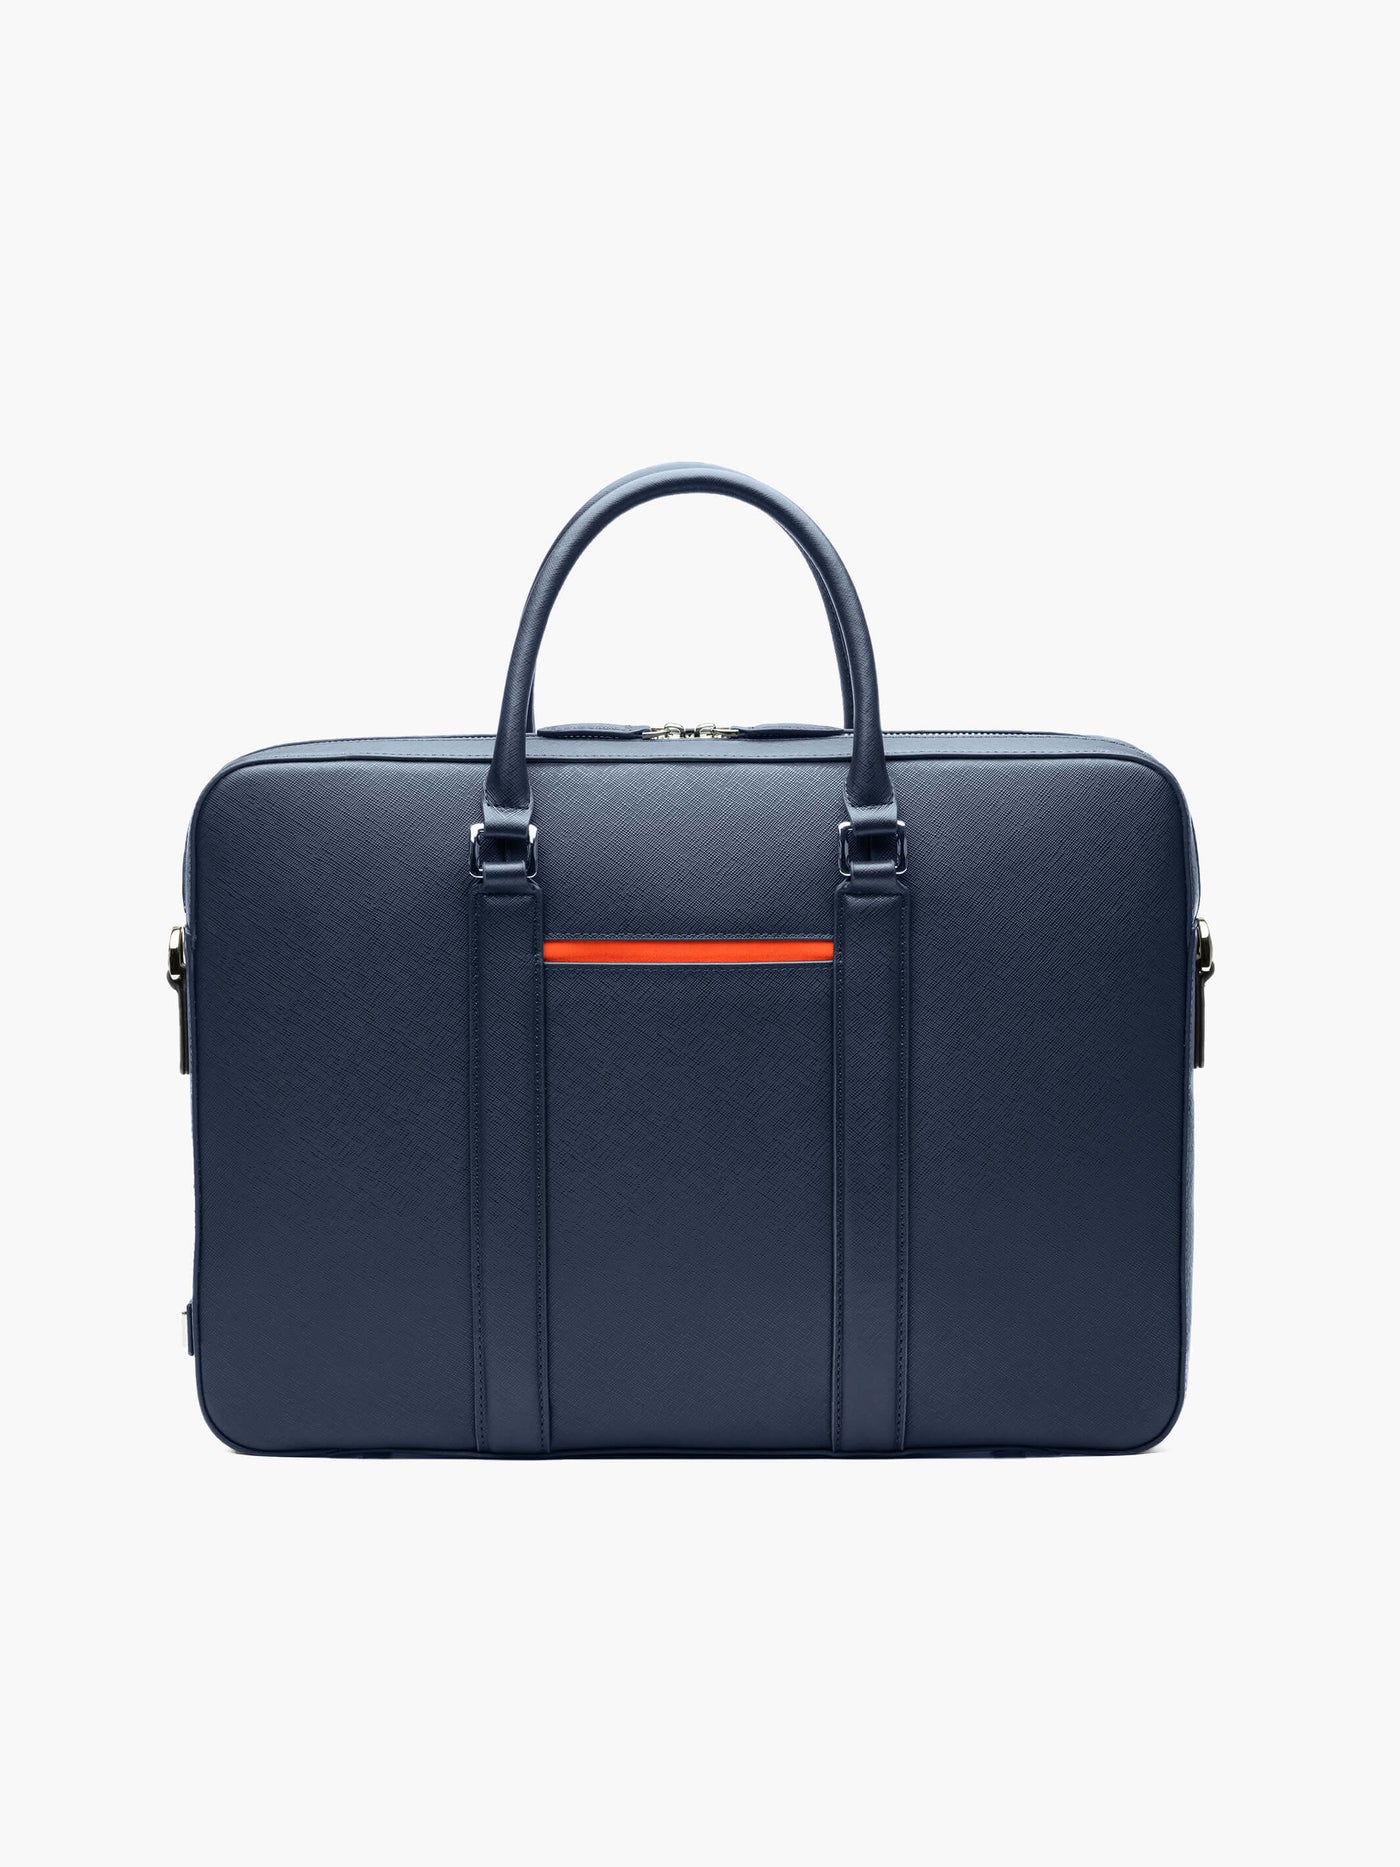 Maverick & Co. - FC Barcelona 16’ Laptop Leather Unisex Briefcase Navy